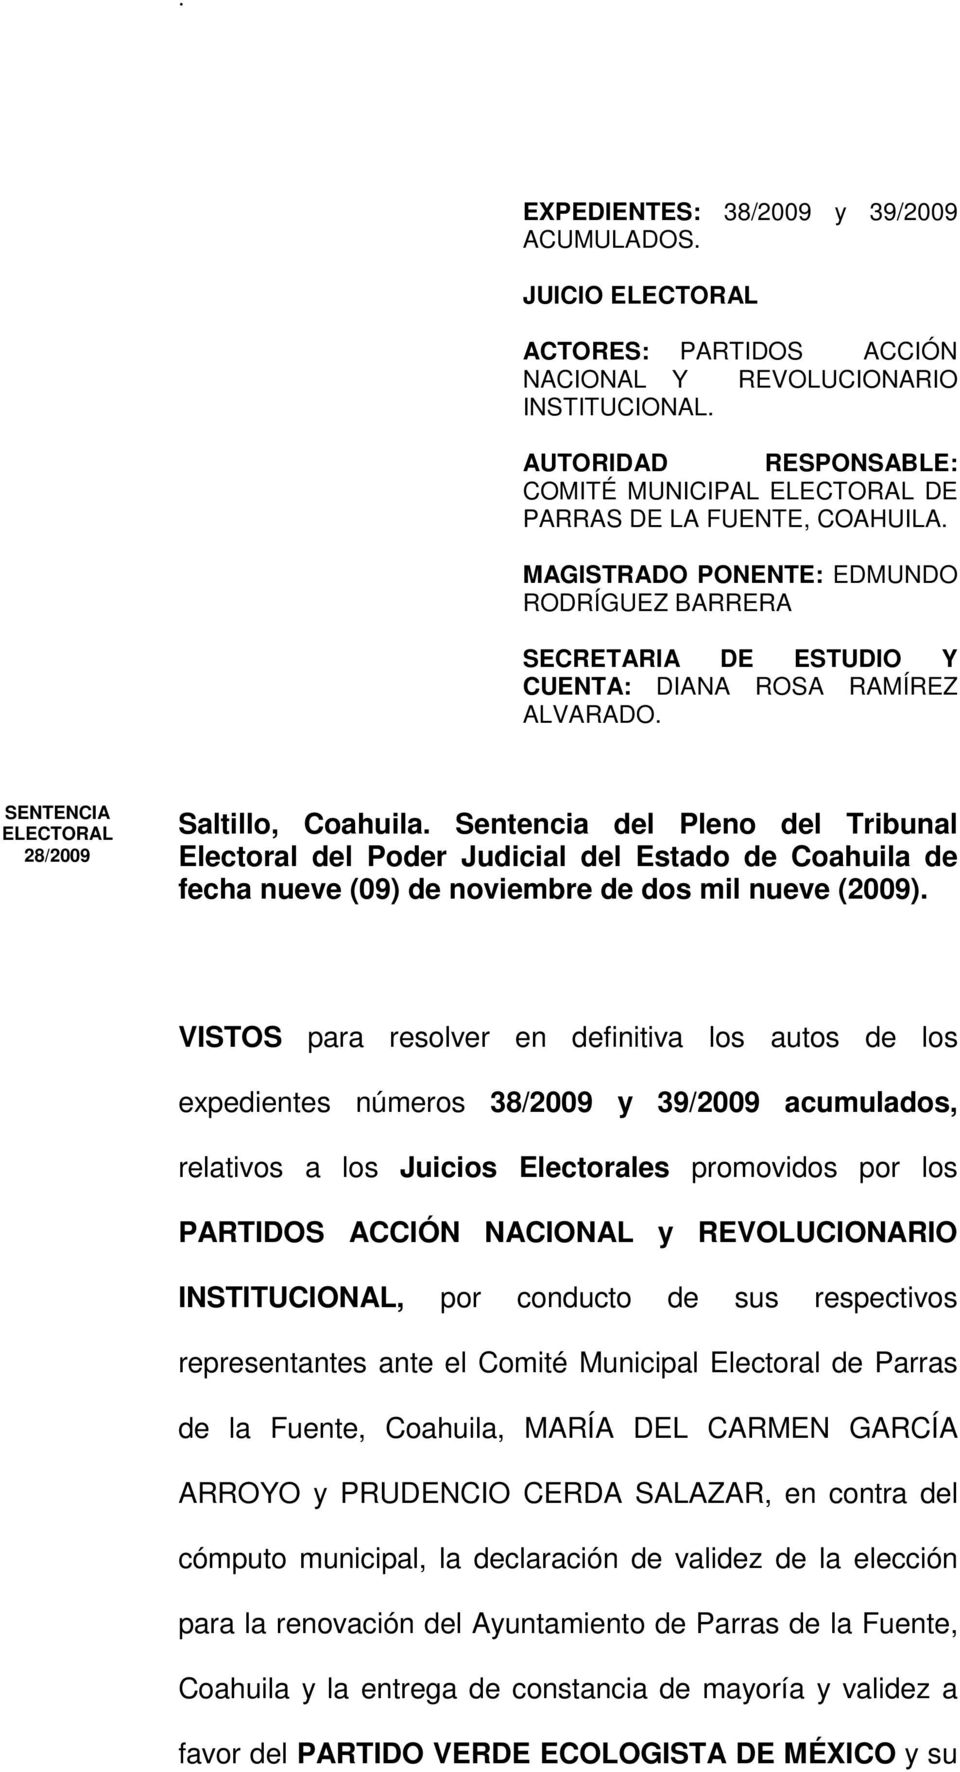 SENTENCIA ELECTORAL 28/2009 Saltillo, Coahuila. Sentencia del Pleno del Tribunal Electoral del Poder Judicial del Estado de Coahuila de fecha nueve (09) de noviembre de dos mil nueve (2009).